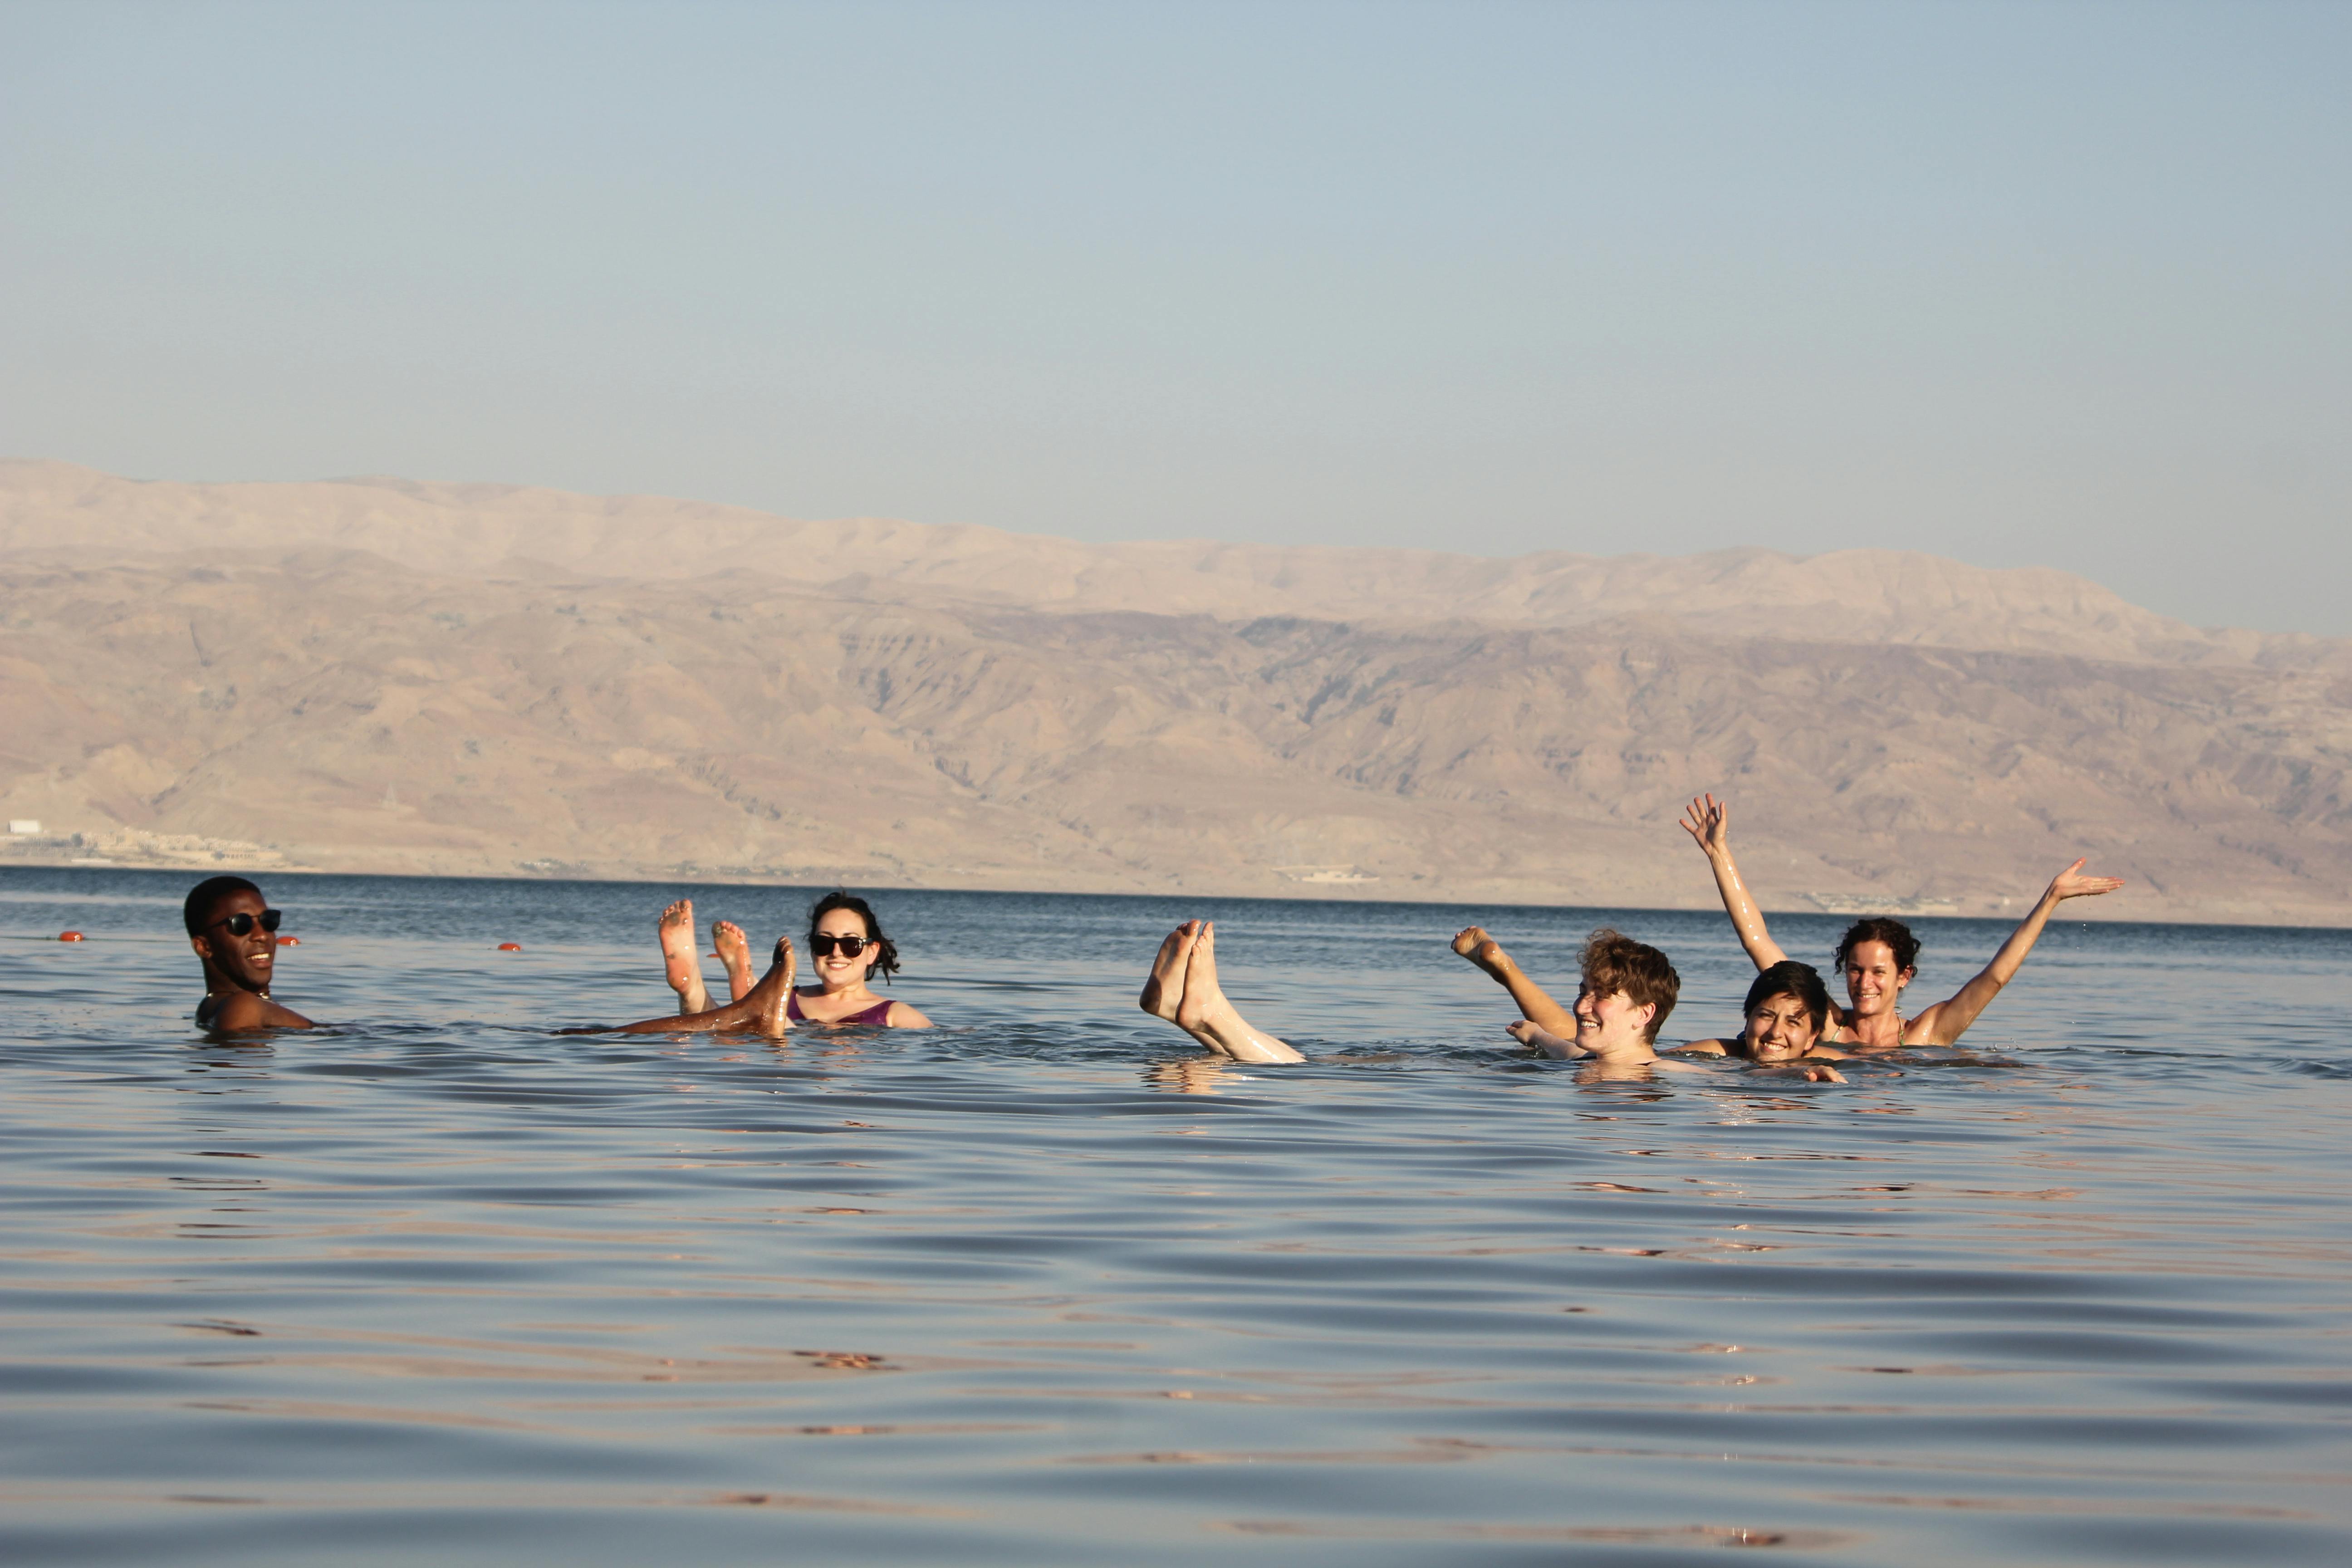 Excursão Masada, Ein Gedi e Mar Morto saindo de Tel Aviv